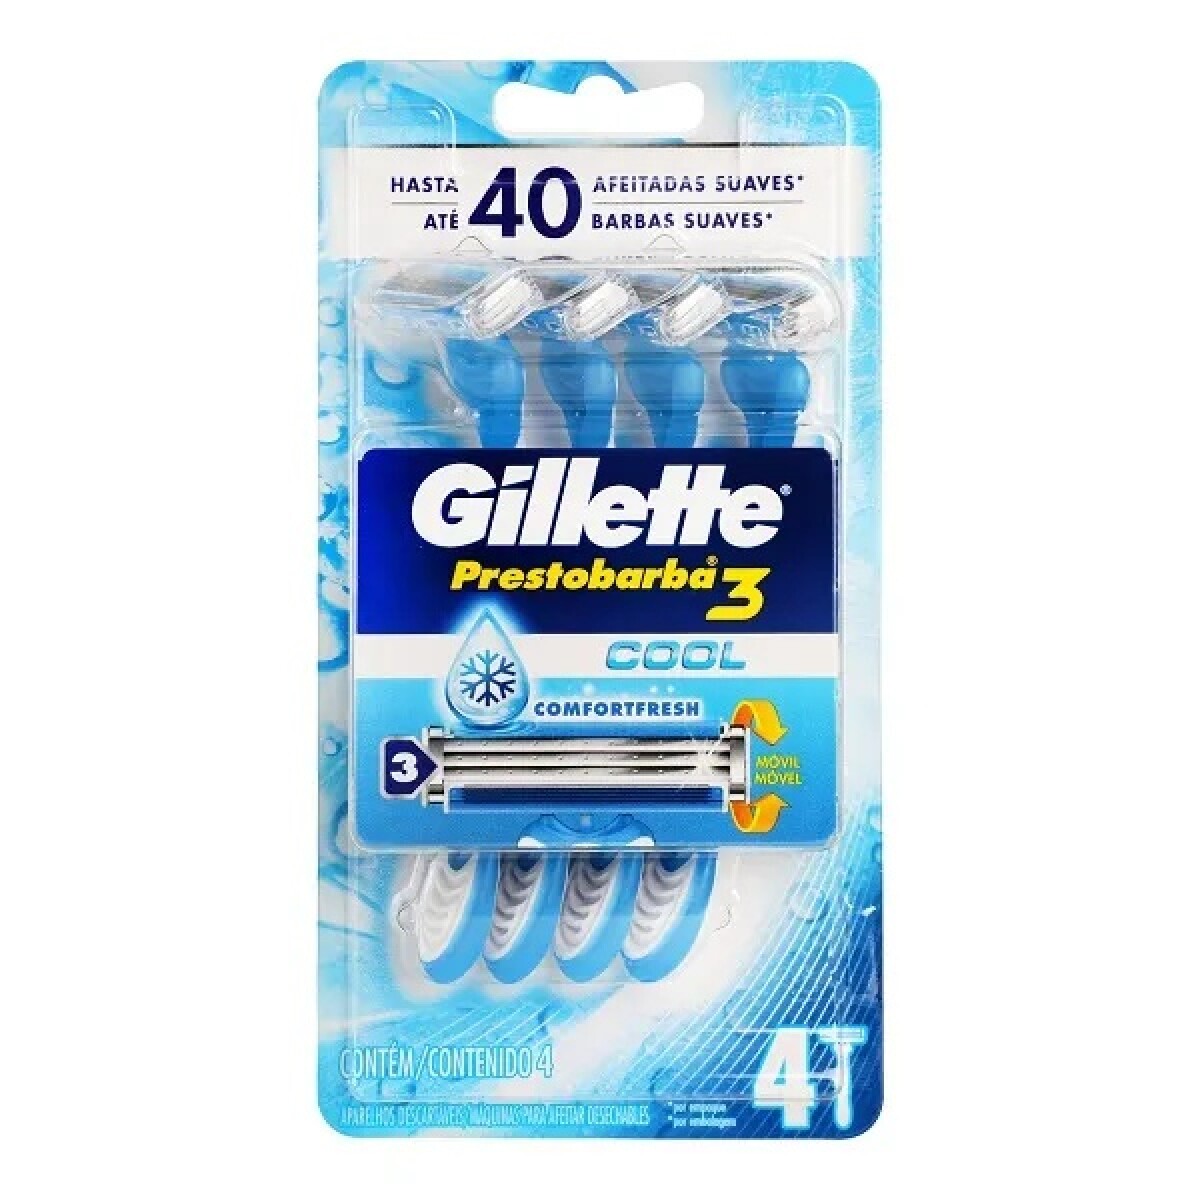 Gillette Prest. Ice 3 X 4 